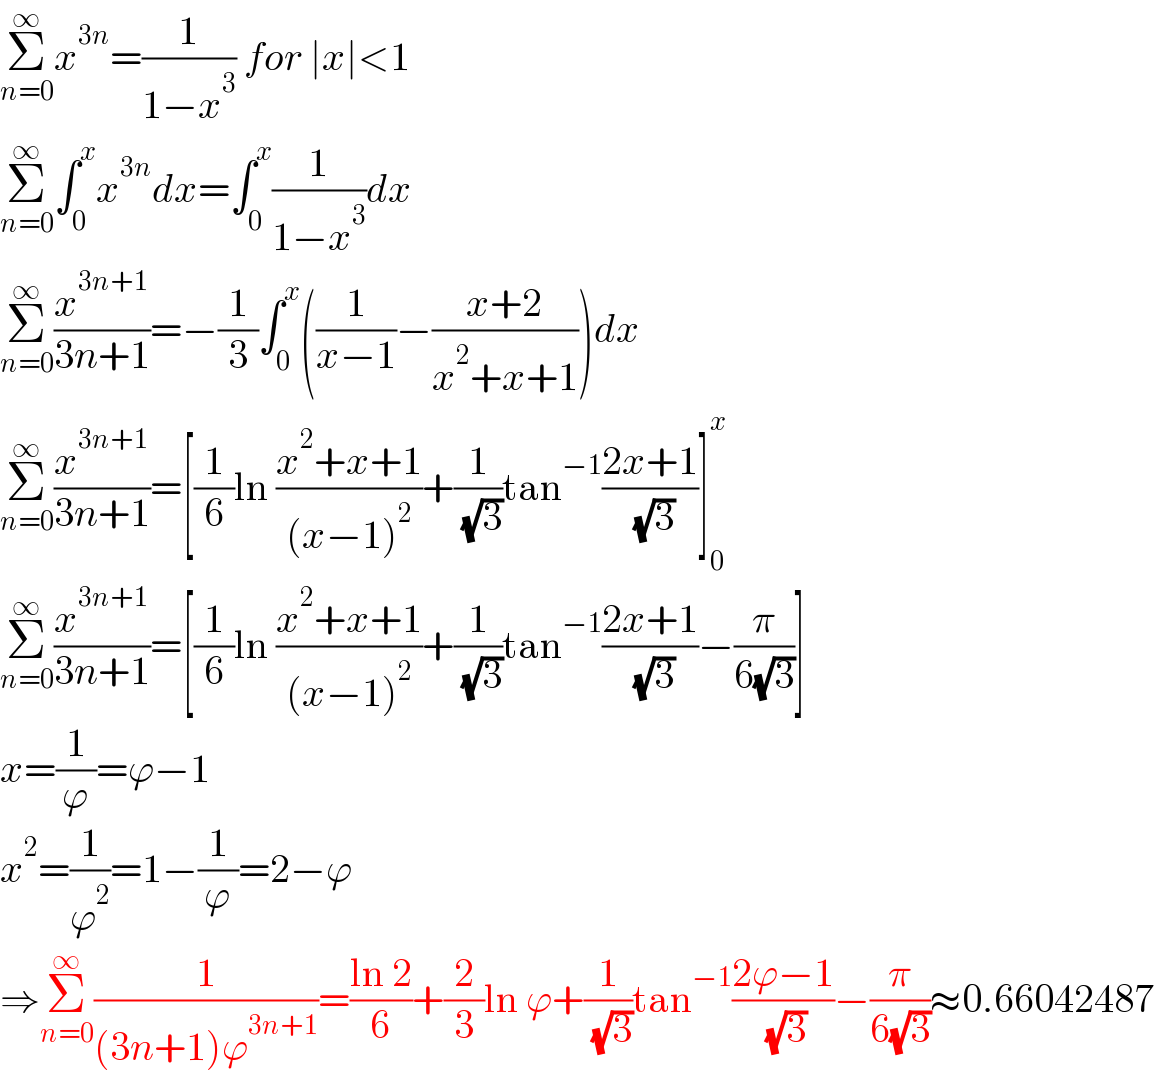 Σ_(n=0) ^∞ x^(3n) =(1/(1−x^3 )) for ∣x∣<1  Σ_(n=0) ^∞ ∫_0 ^x x^(3n) dx=∫_0 ^x (1/(1−x^3 ))dx  Σ_(n=0) ^∞ (x^(3n+1) /(3n+1))=−(1/3)∫_0 ^x ((1/(x−1))−((x+2)/(x^2 +x+1)))dx  Σ_(n=0) ^∞ (x^(3n+1) /(3n+1))=[(1/6)ln ((x^2 +x+1)/((x−1)^2 ))+(1/( (√3)))tan^(−1) ((2x+1)/( (√3)))]_0 ^x   Σ_(n=0) ^∞ (x^(3n+1) /(3n+1))=[(1/6)ln ((x^2 +x+1)/((x−1)^2 ))+(1/( (√3)))tan^(−1) ((2x+1)/( (√3)))−(π/(6(√3)))]  x=(1/ϕ)=ϕ−1  x^2 =(1/ϕ^2 )=1−(1/ϕ)=2−ϕ  ⇒Σ_(n=0) ^∞ (1/((3n+1)ϕ^(3n+1) ))=((ln 2)/6)+(2/3)ln ϕ+(1/( (√3)))tan^(−1) ((2ϕ−1)/( (√3)))−(π/(6(√3)))≈0.66042487  